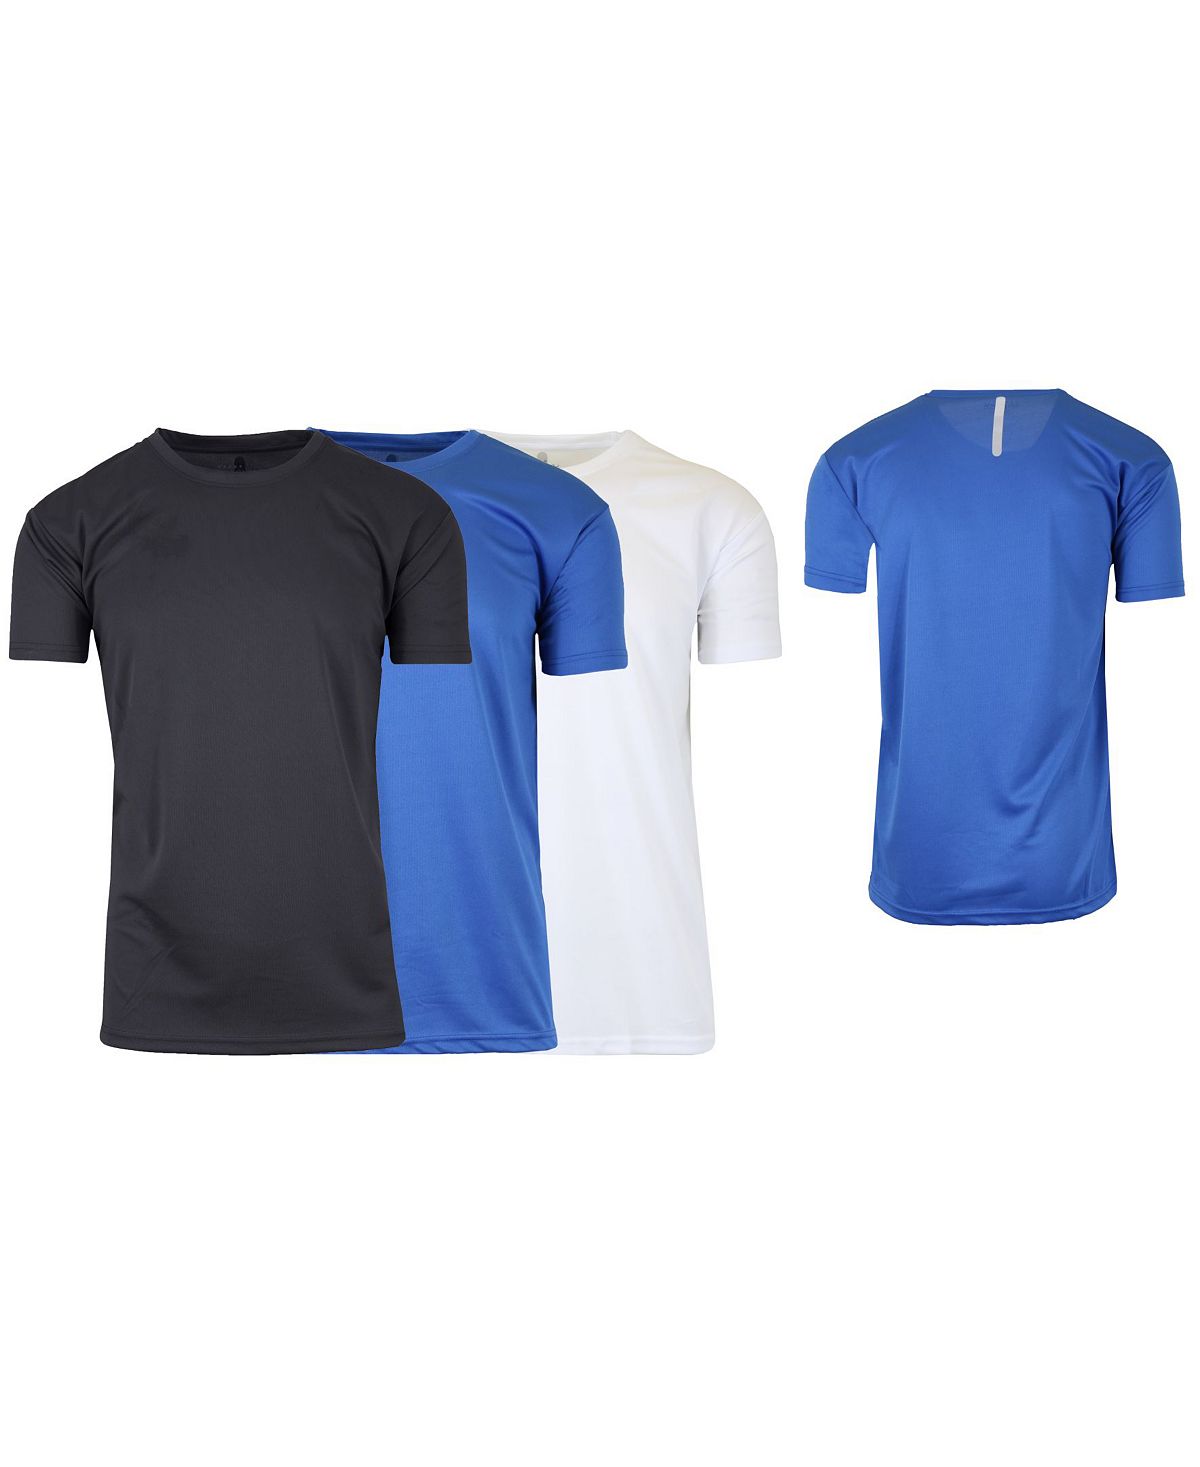 Мужская быстросохнущая влагоотводящая футболка с короткими рукавами, 3 шт. Galaxy By Harvic